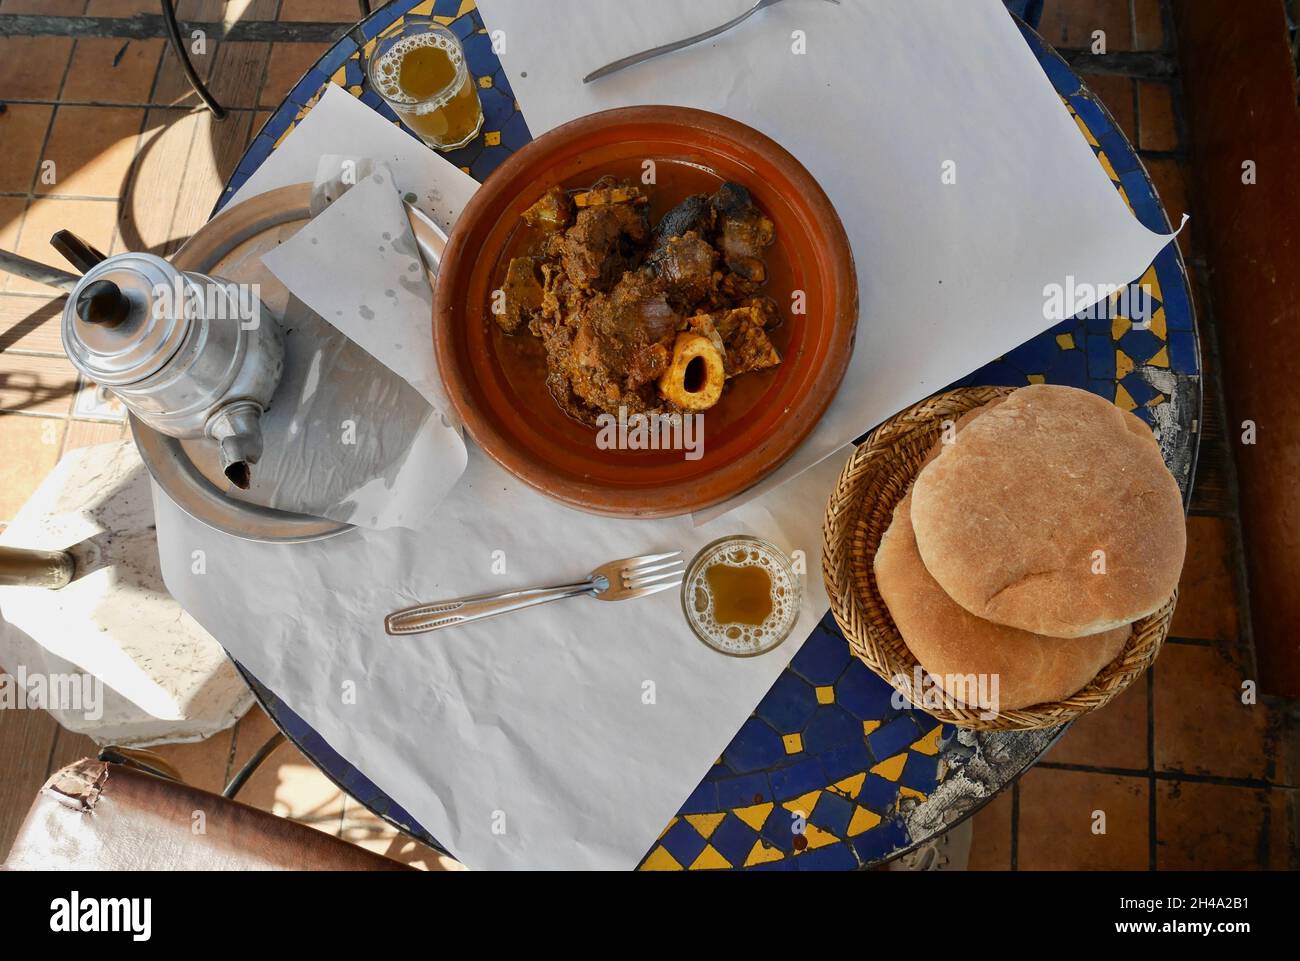 Beliebte lokale Gerichte Tangia, Tanjia, gebratenes Lamm in Tontöpfen im Hammam Ofen, serviert mit Brot und Minztee. Marrakesch, Marokko. Stockfoto